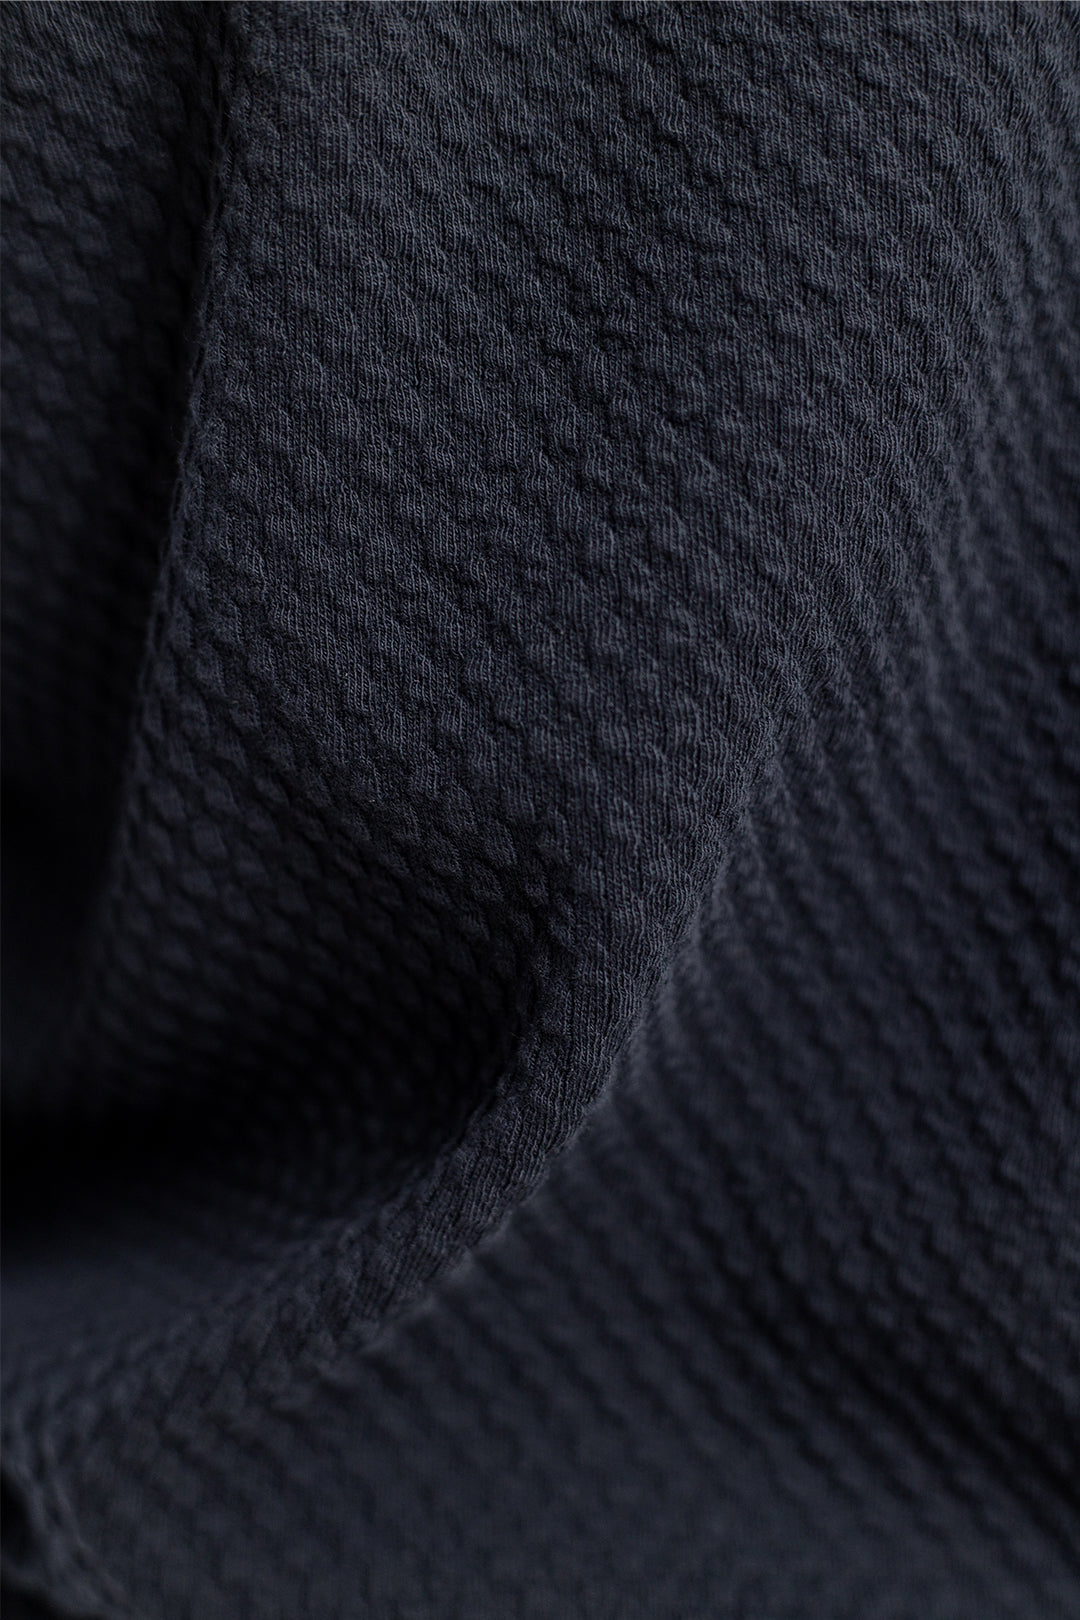 Schwarzer Sweater Waffel aus 100% Bio-Baumwolle von Rotholz